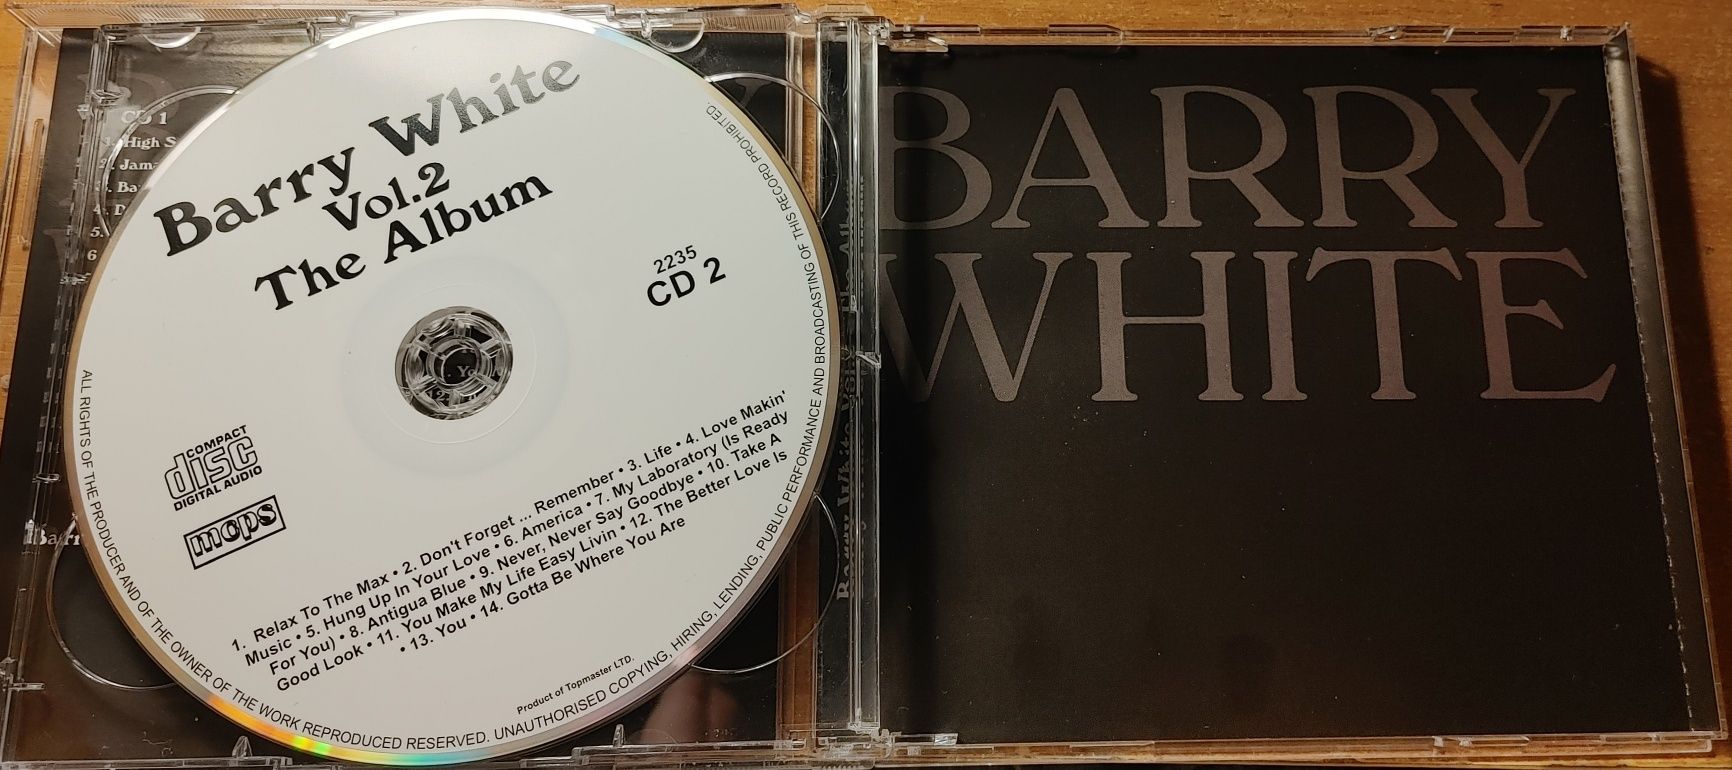 plyta cd barry white 2cd